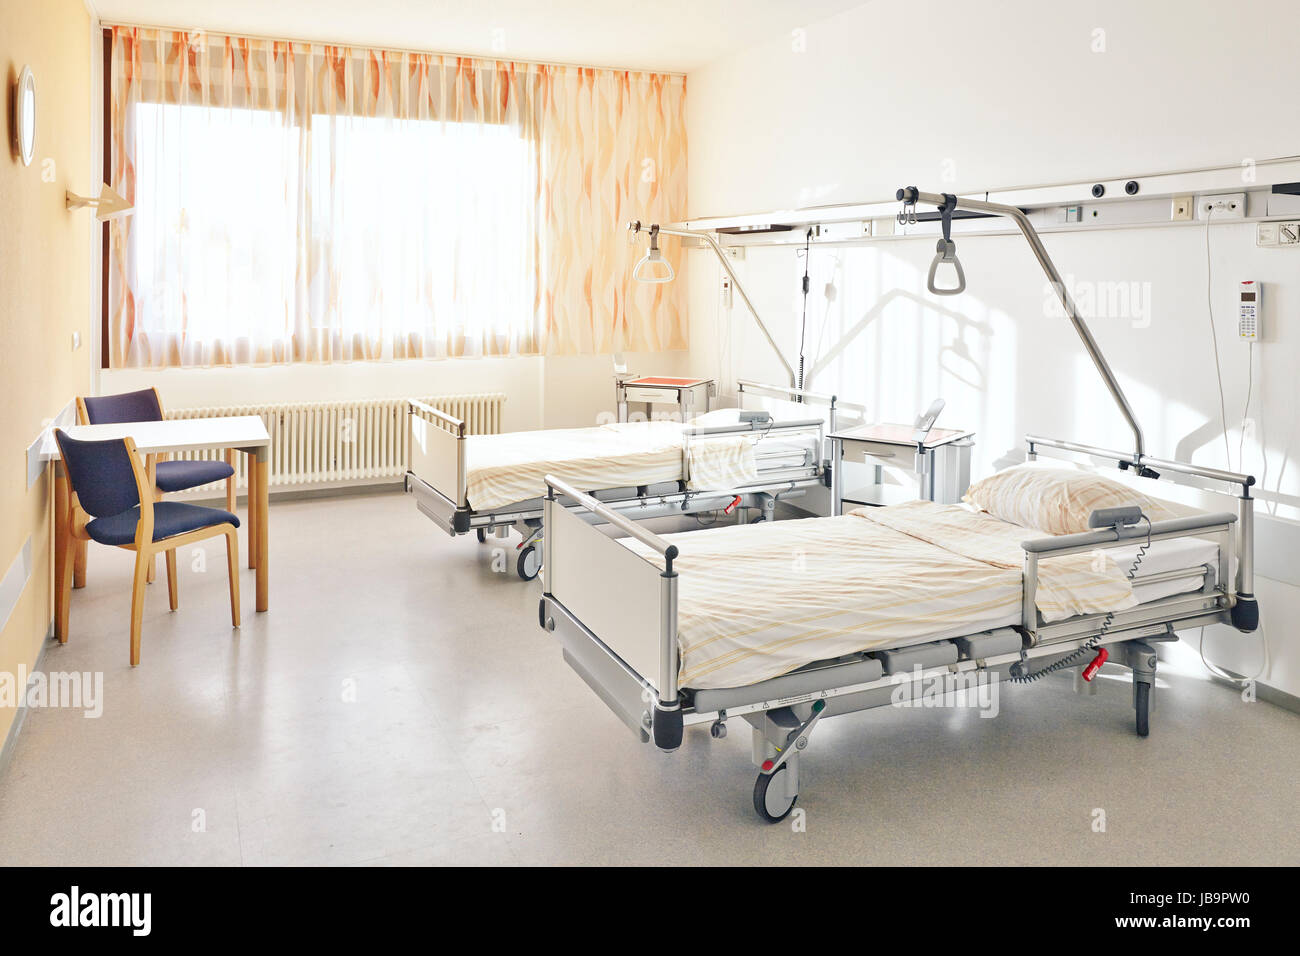 Krankenzimmer mit zwei Betten ohne Menschen Stock Photo